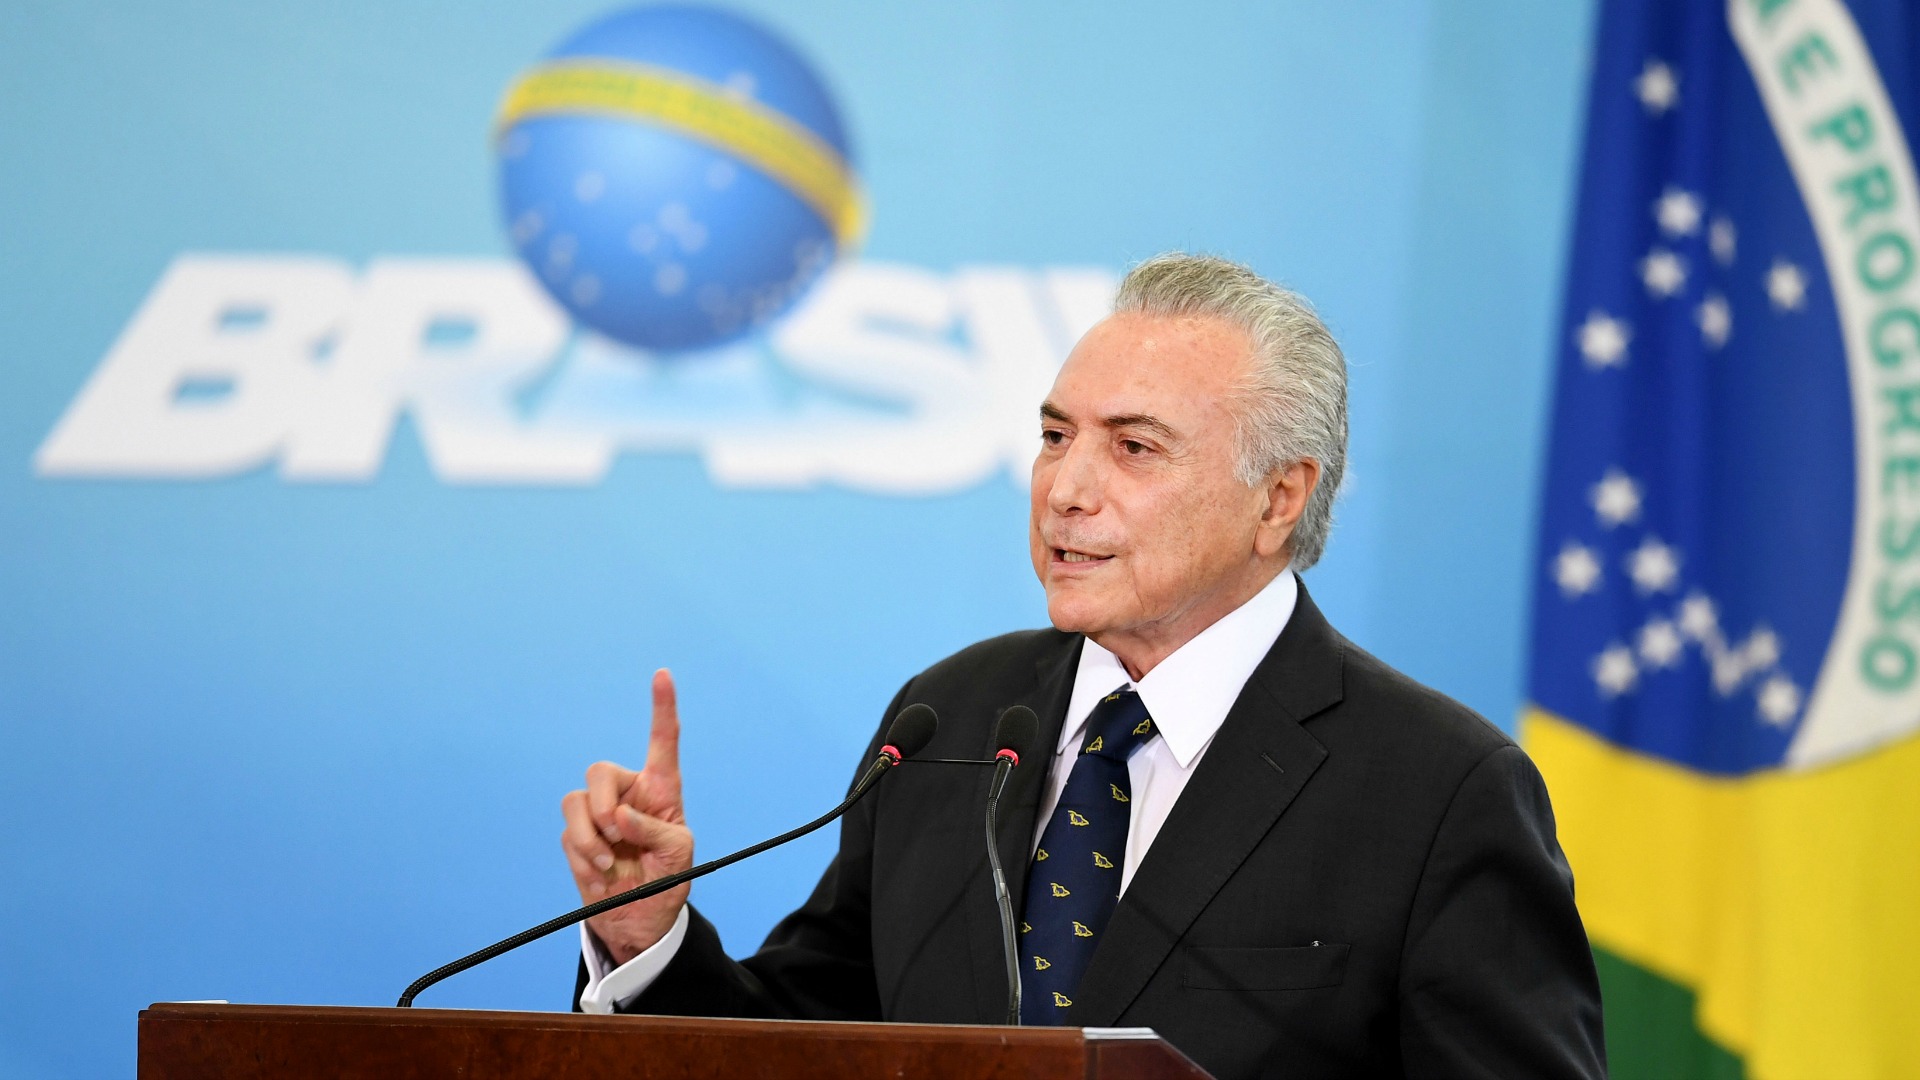 El presidente de Brasil limita el rol de la mujer a la educación de los niños y el cuidado de la casa